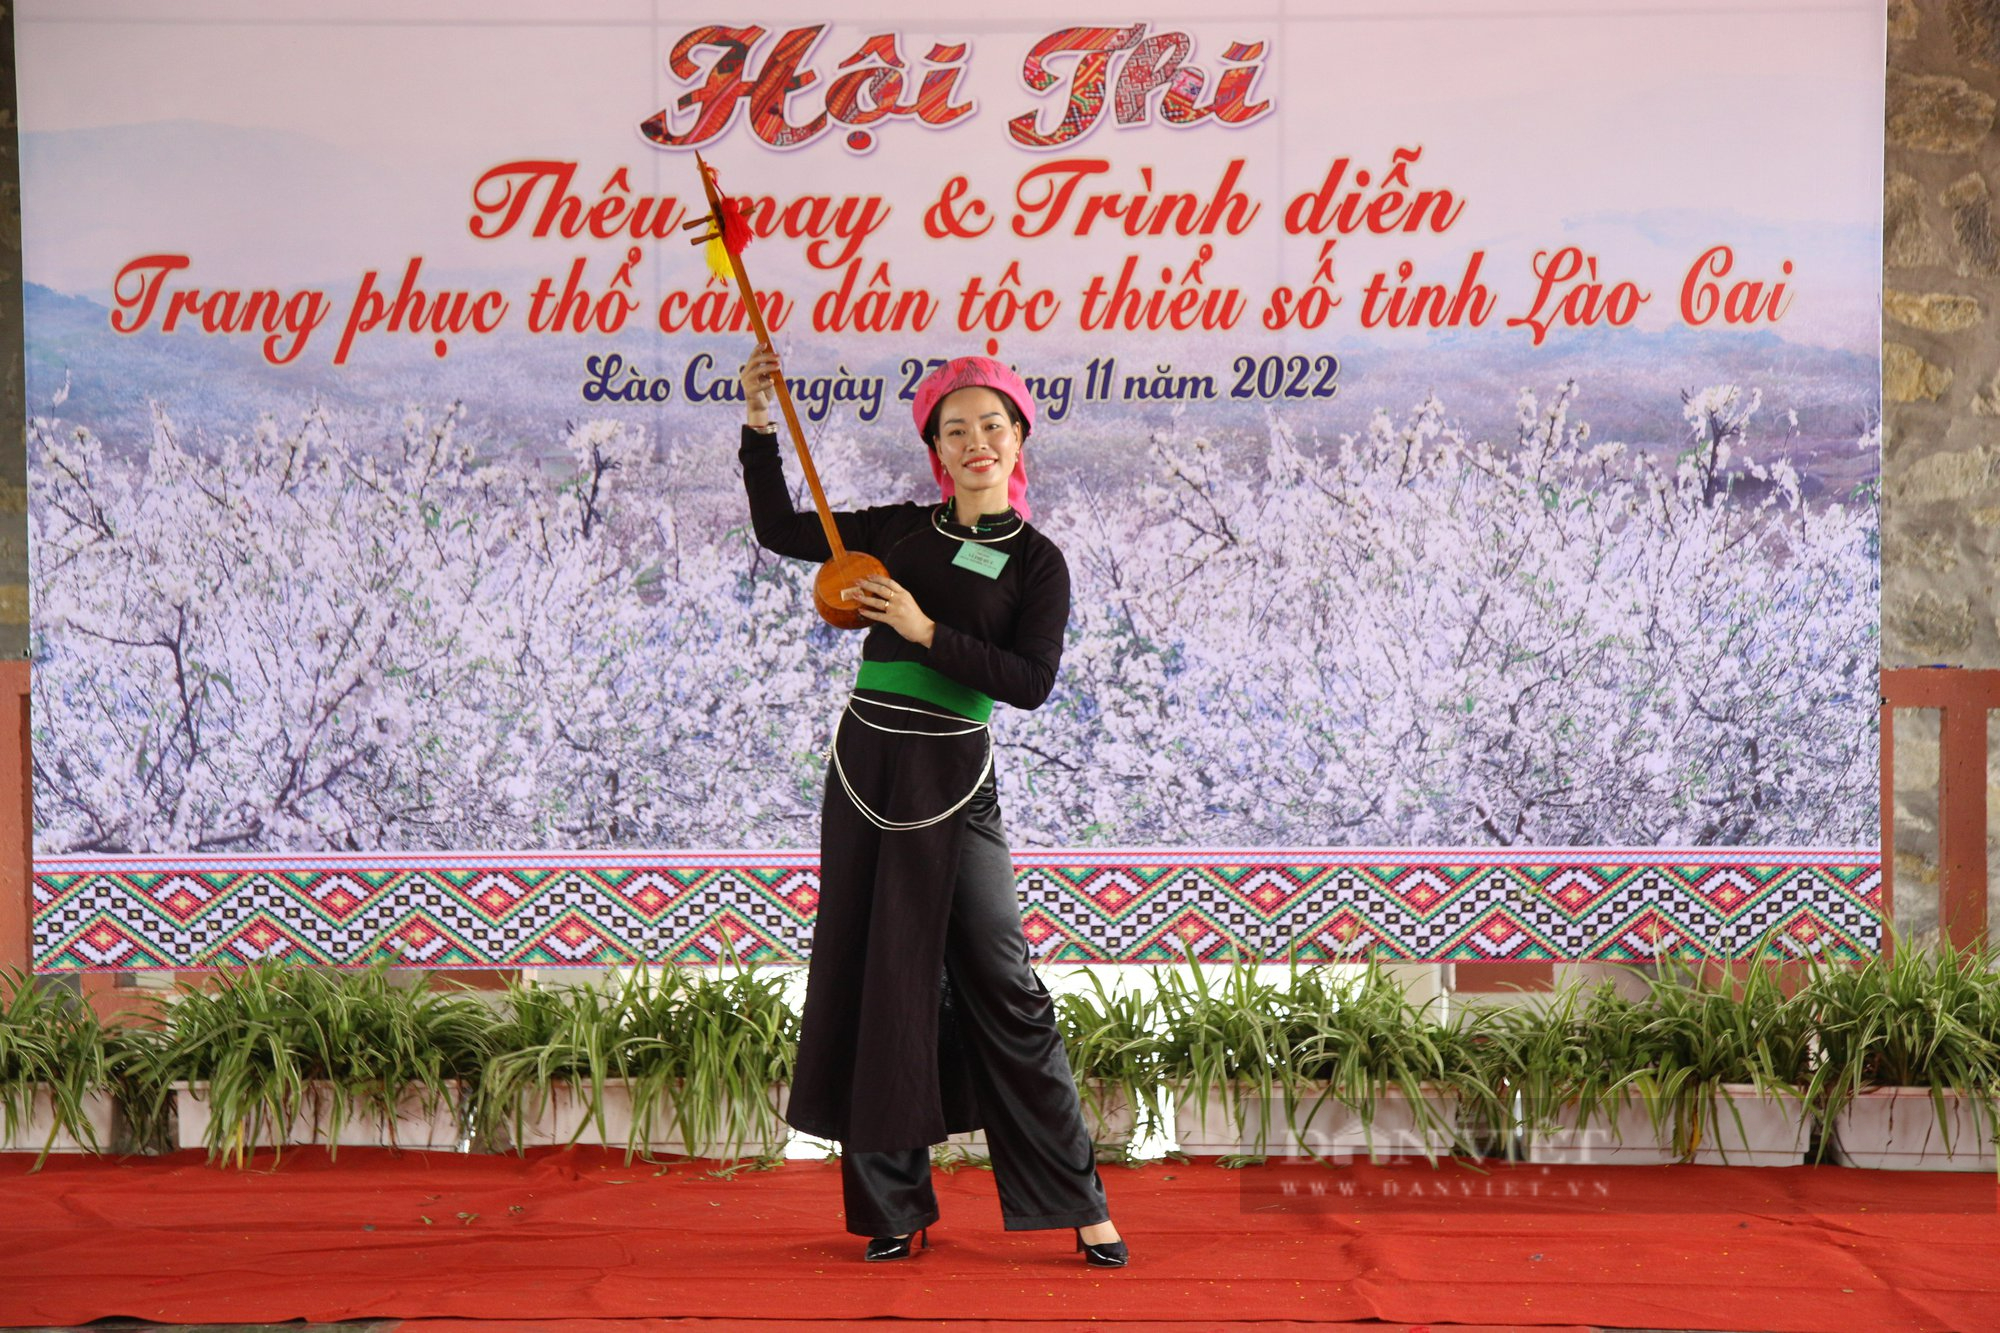 Rực rỡ trang phục thổ cẩm dân tộc thiểu số tỉnh Lào Cai trong Hội thi tay nghề thêu may và trình diễn - Ảnh 13.